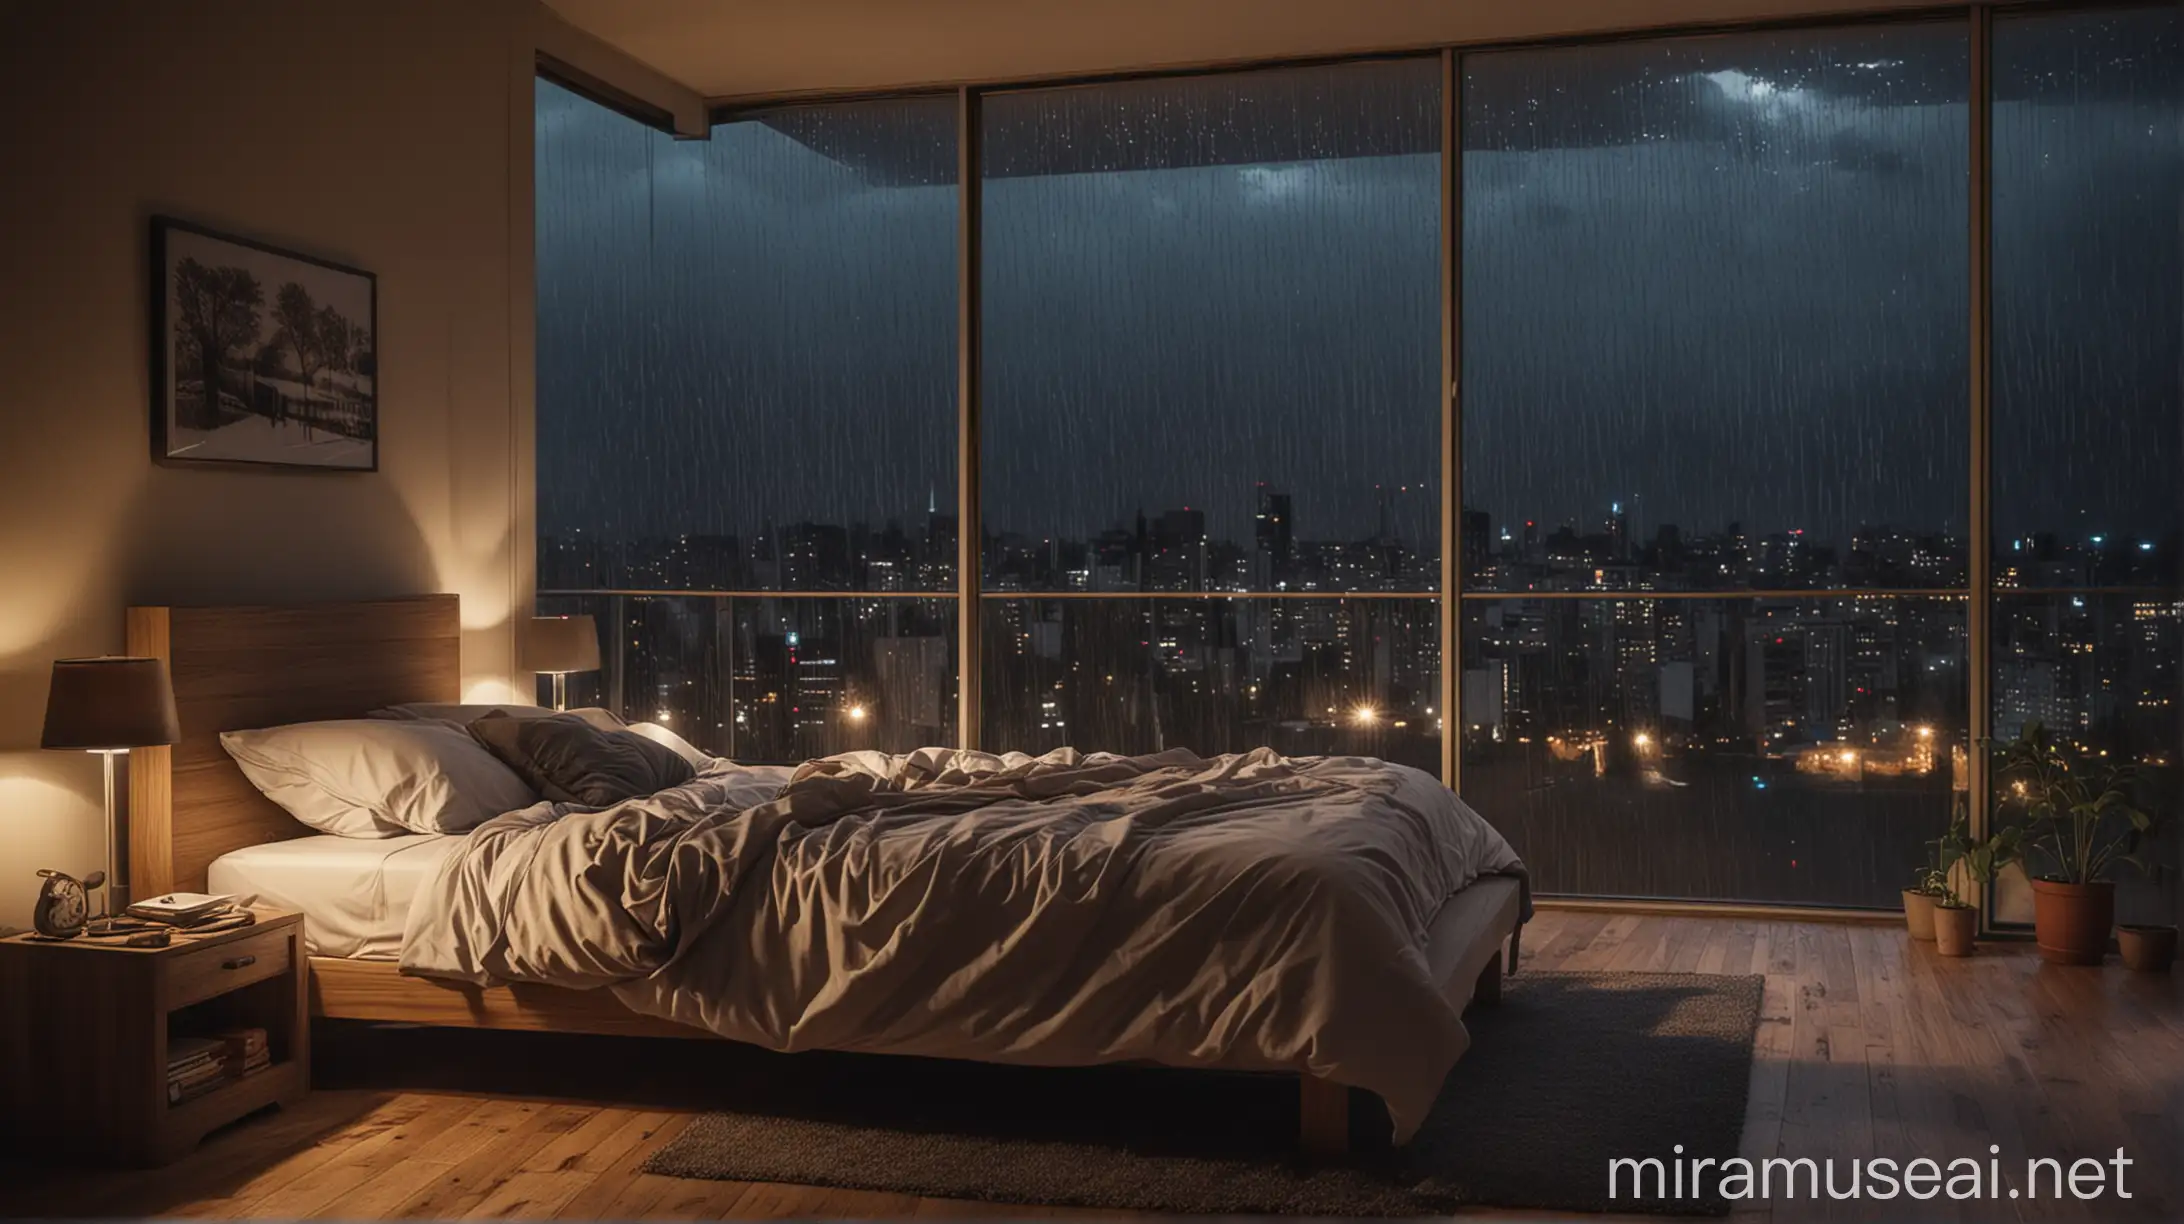 Cozy Bedroom Scene on a Rainy Night